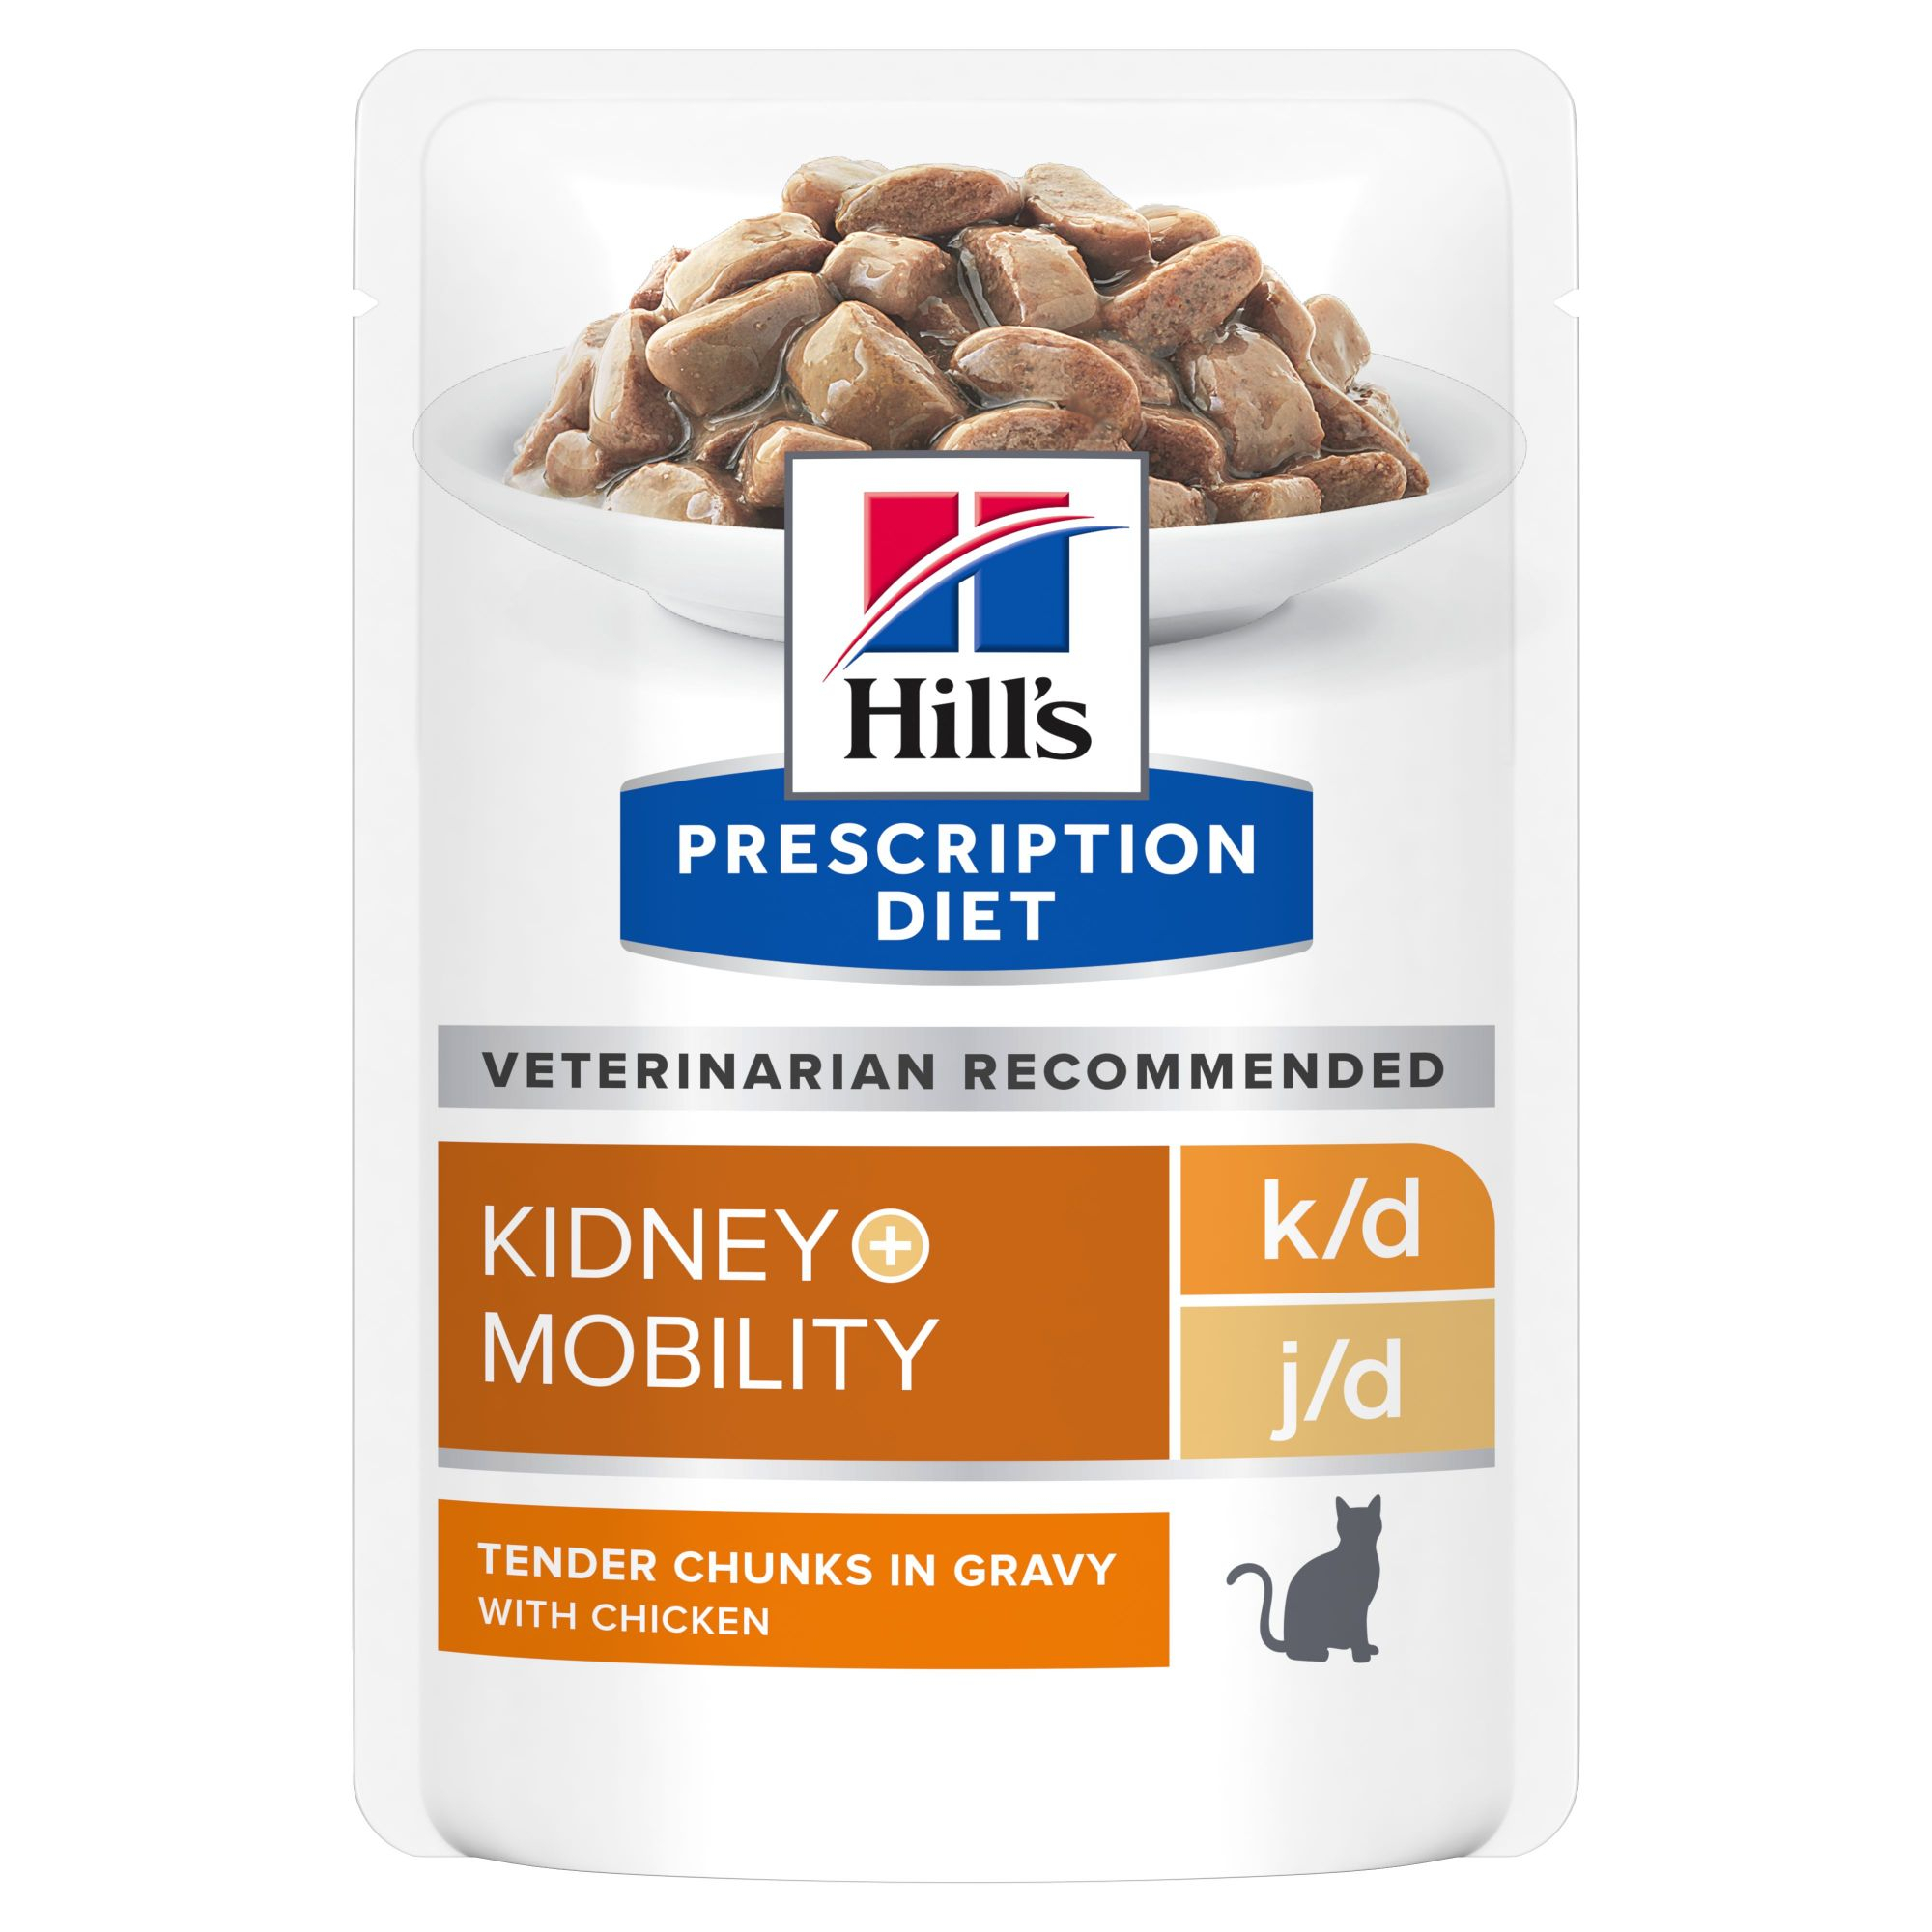 Saqueta de refeição HILL'S Prescription Diet k/d j/d Kidney+Mobility para Gato de Frango